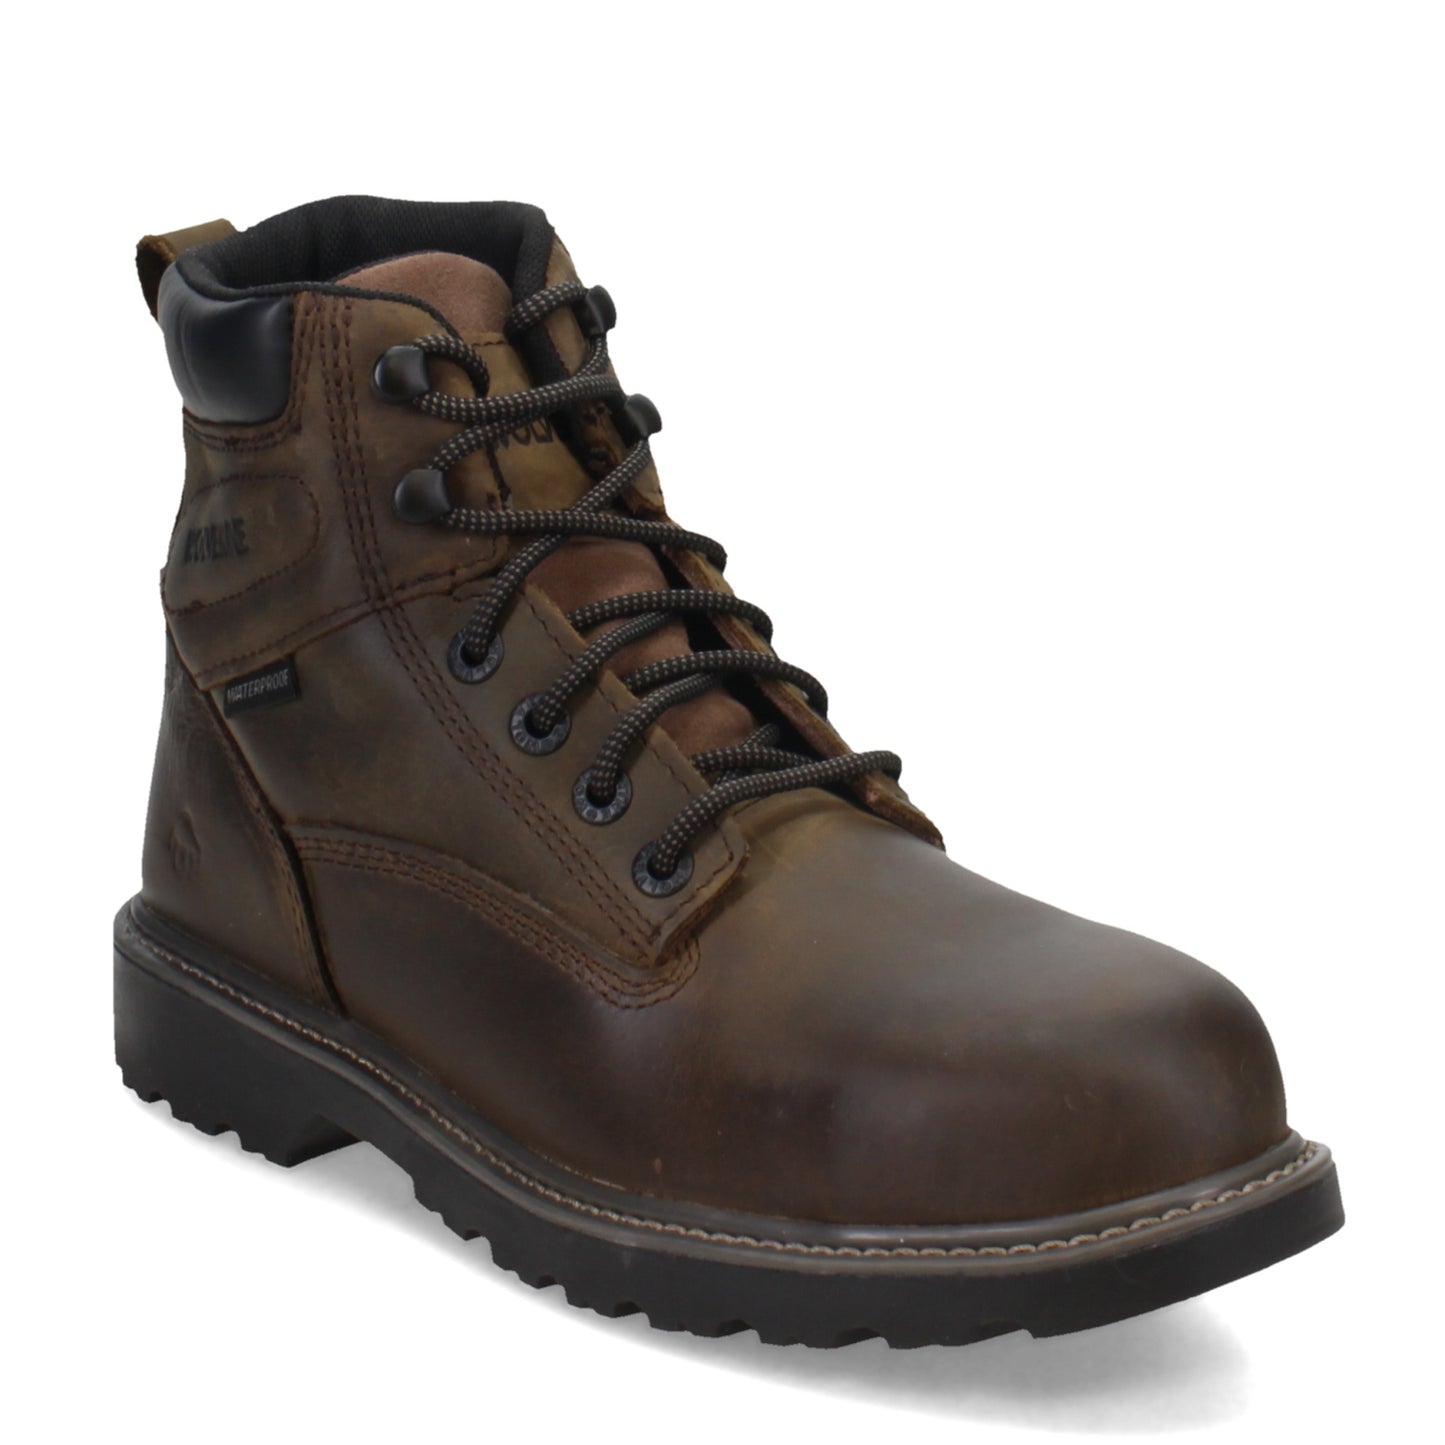 Men's Wolverine Boots, Floorhand 6 inch Waterproof Steel Toe Work Boot ...